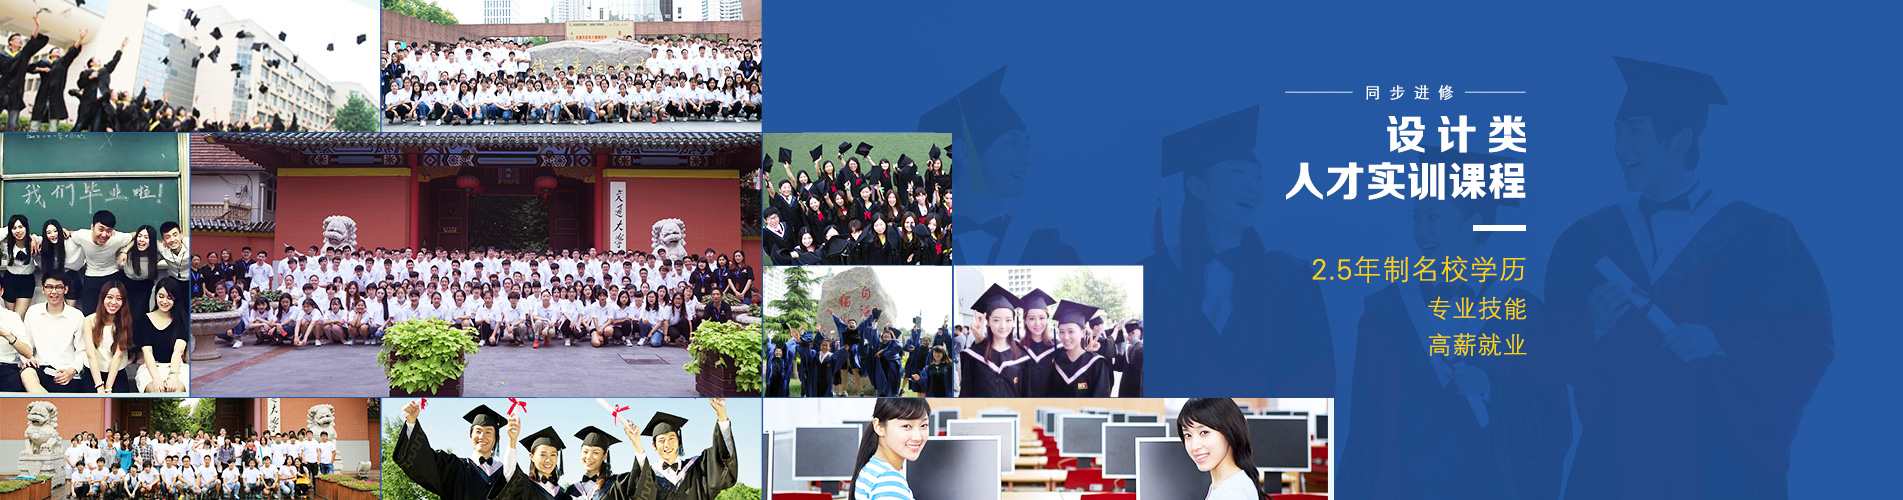 网站建站模板:上海交大教育集团湖畔建筑线上教育